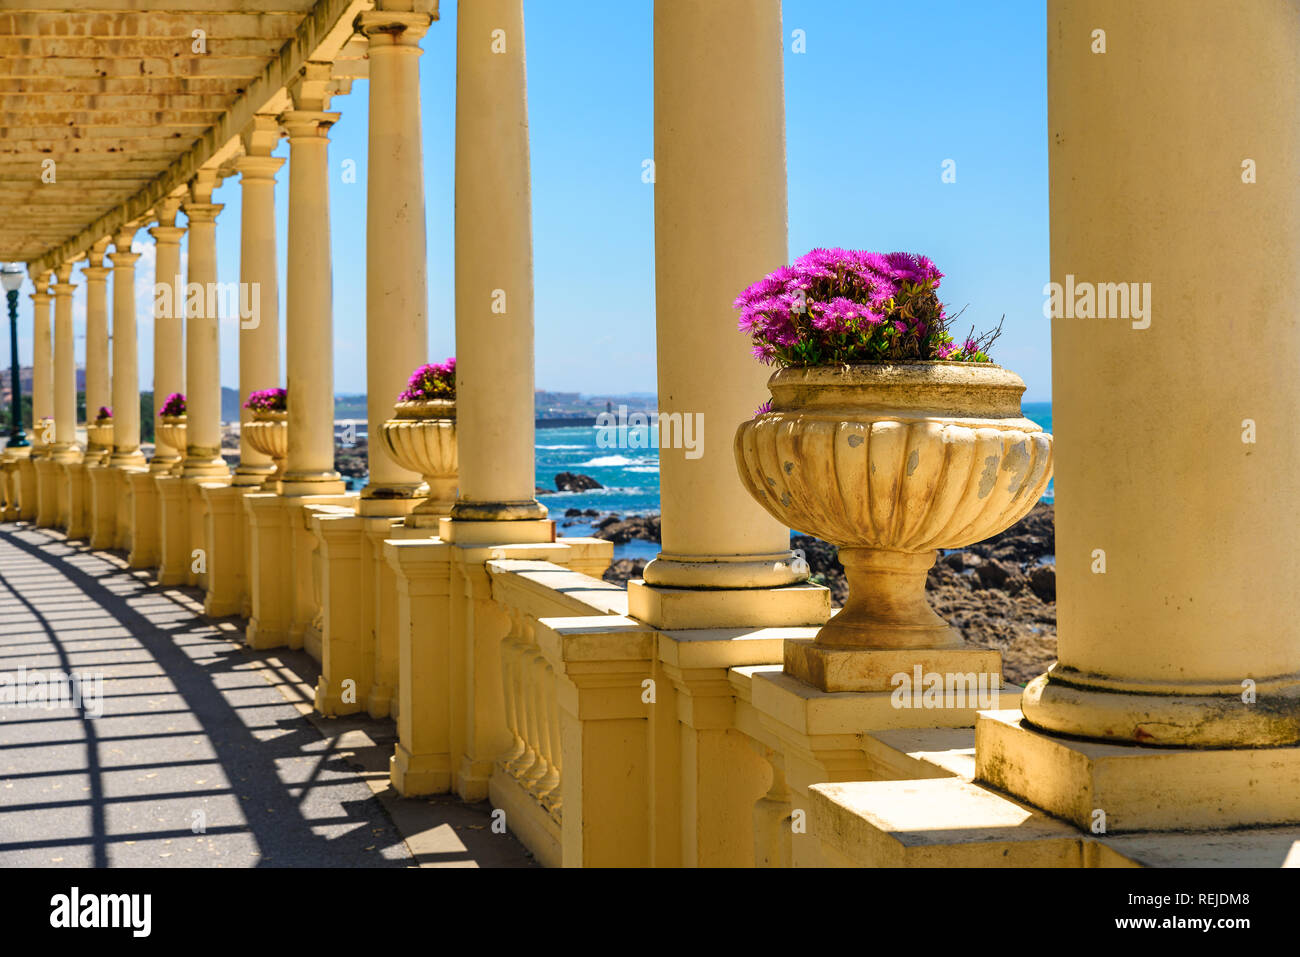 Porto, Portugal. Belle vue sur la mer dans la ville de Porto à partir de la colonnade avec fleurs, côte Atlantique Banque D'Images